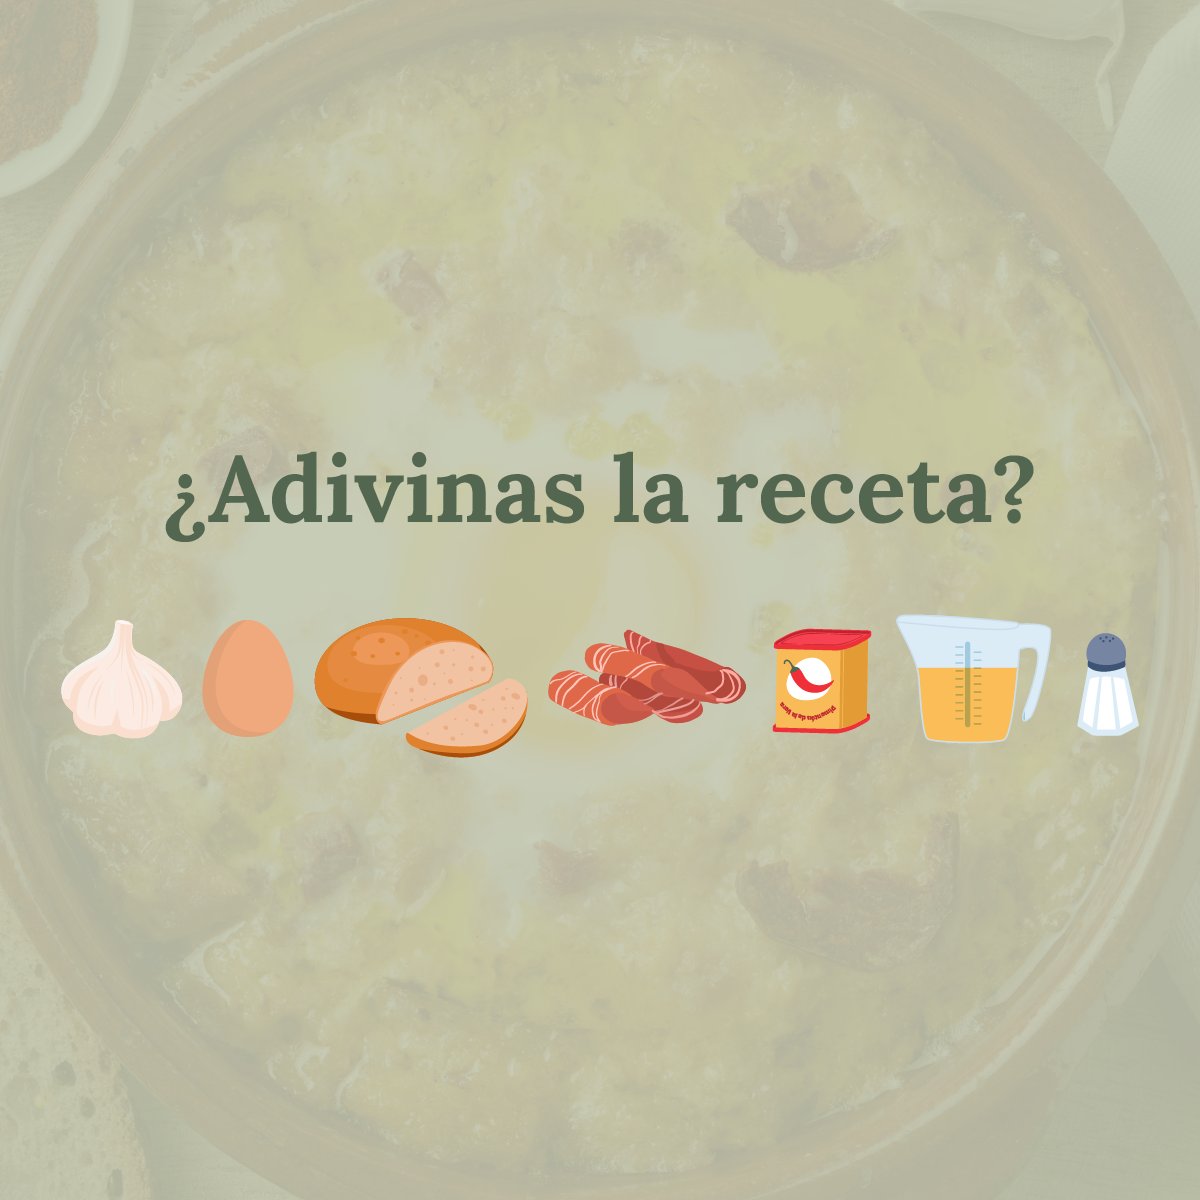 El 23 de abril celebramos el Día de Castilla y León y lo queremos celebrar contigo con un nuevo reto para que adivines la receta con emojis. Pista 💡es un típico plato de cuchara de nuestra región que se toma en invierno. ¿Sabes de qué plato se trata?